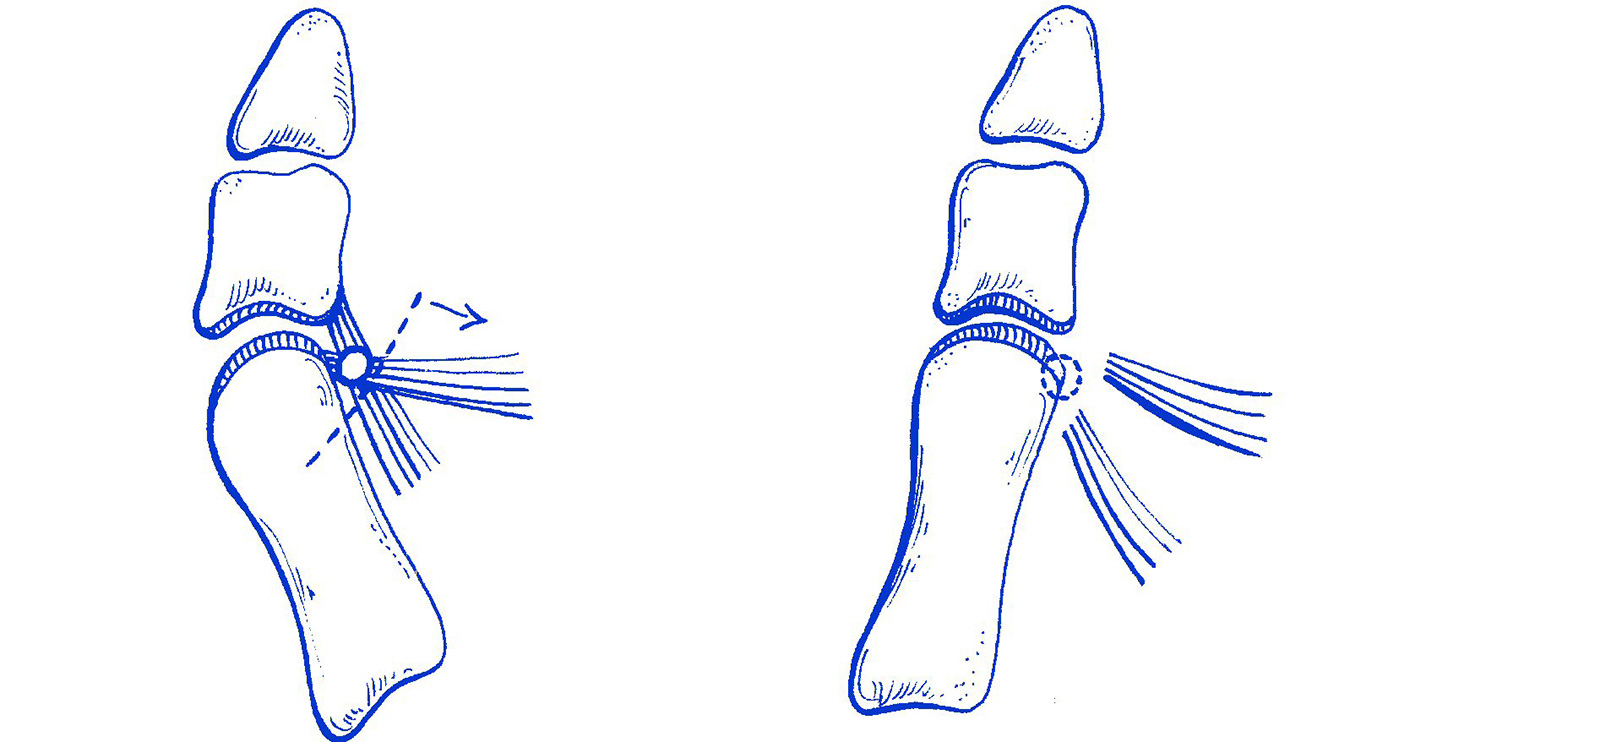 Abb. 6-10: Schemazeichnung eines distalen Weichteilreleases der Sehne des M. adductor hallucis